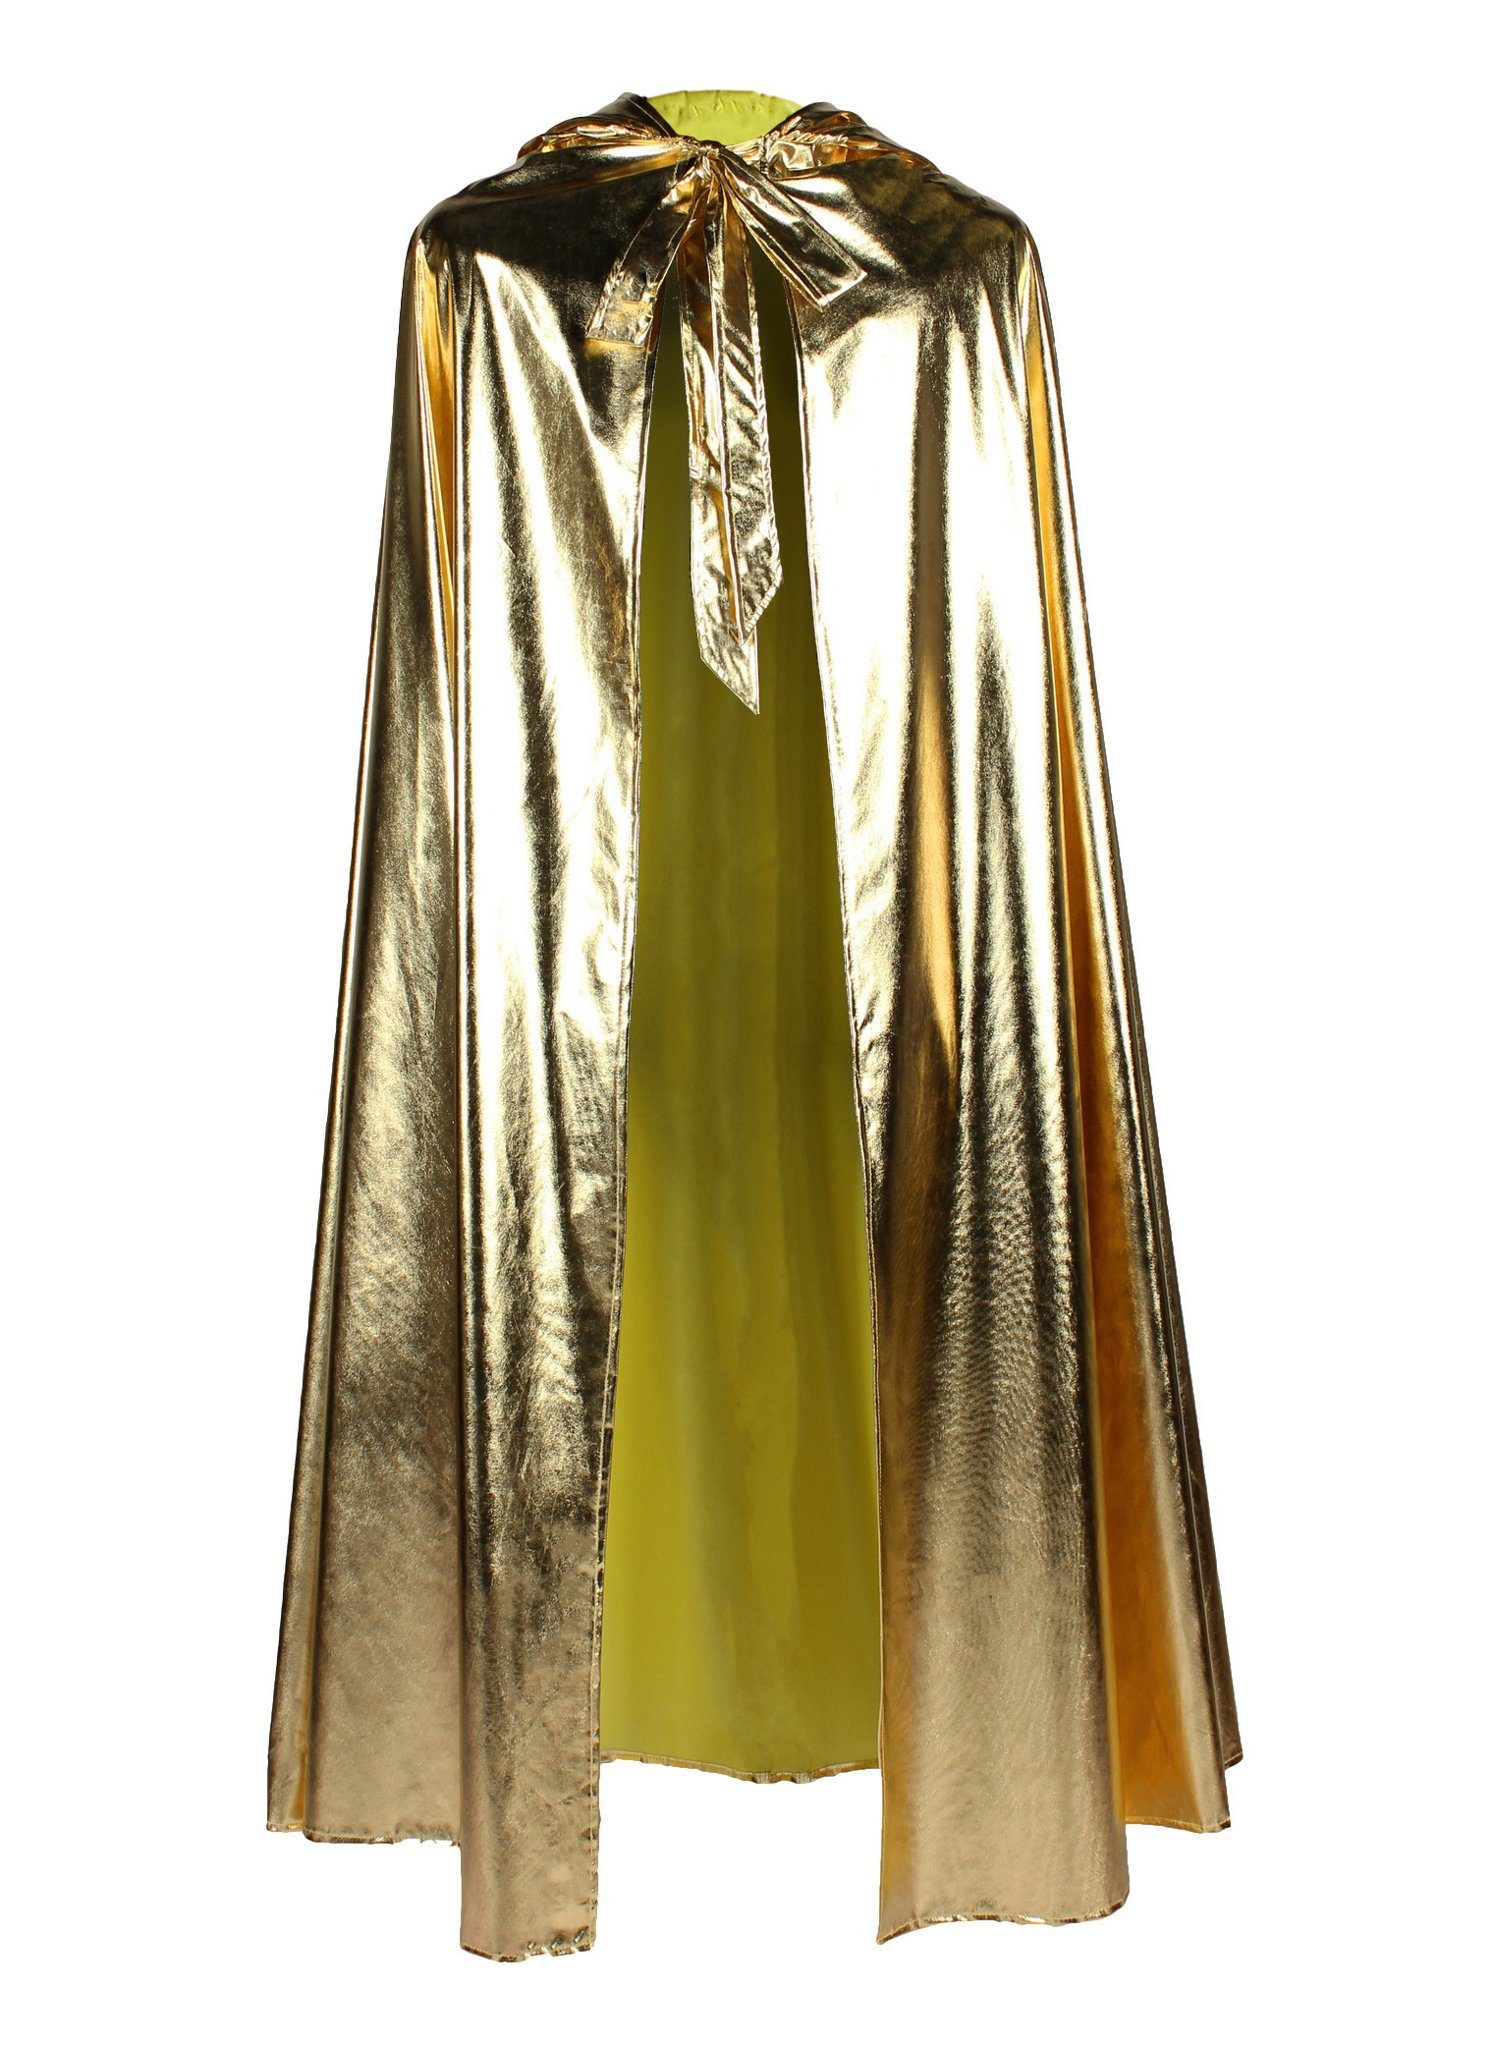 thetru Kostüm Goldener Kapuzenumhang, Metallisch glänzendes Cape für Superhelden, Rockstars und Alien-Over